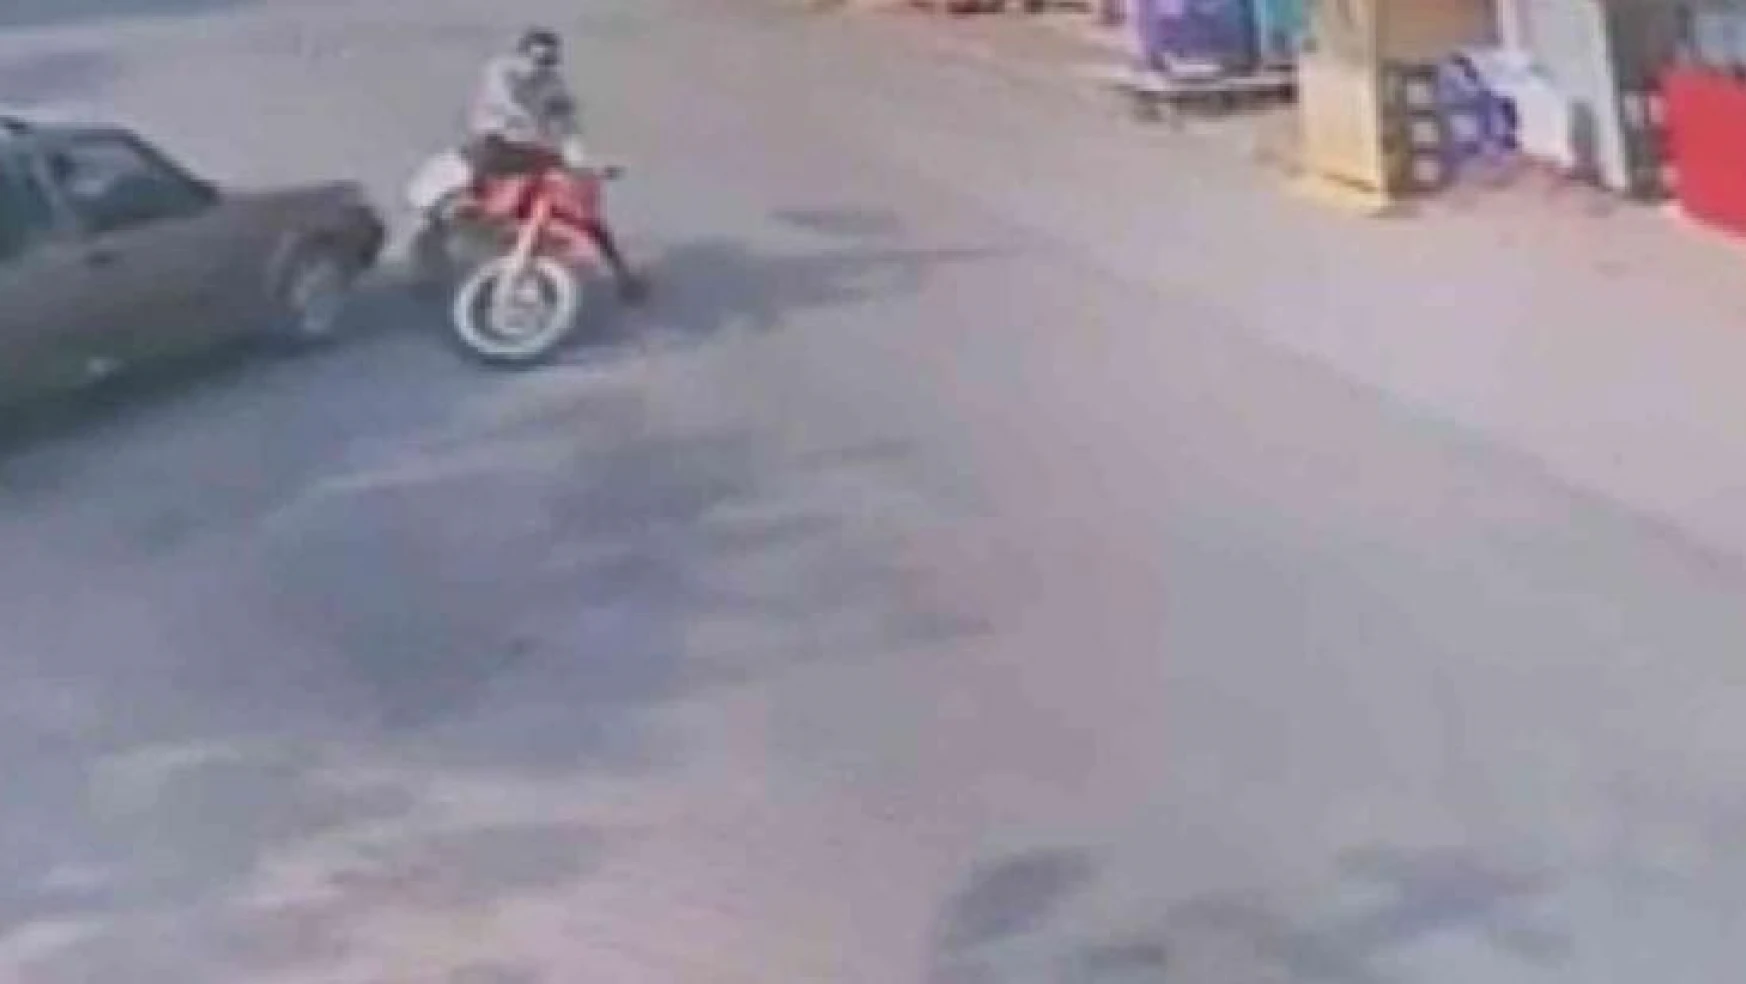 Mersin'de motosiklet kazaları güvenlik kameralarına yansıdı